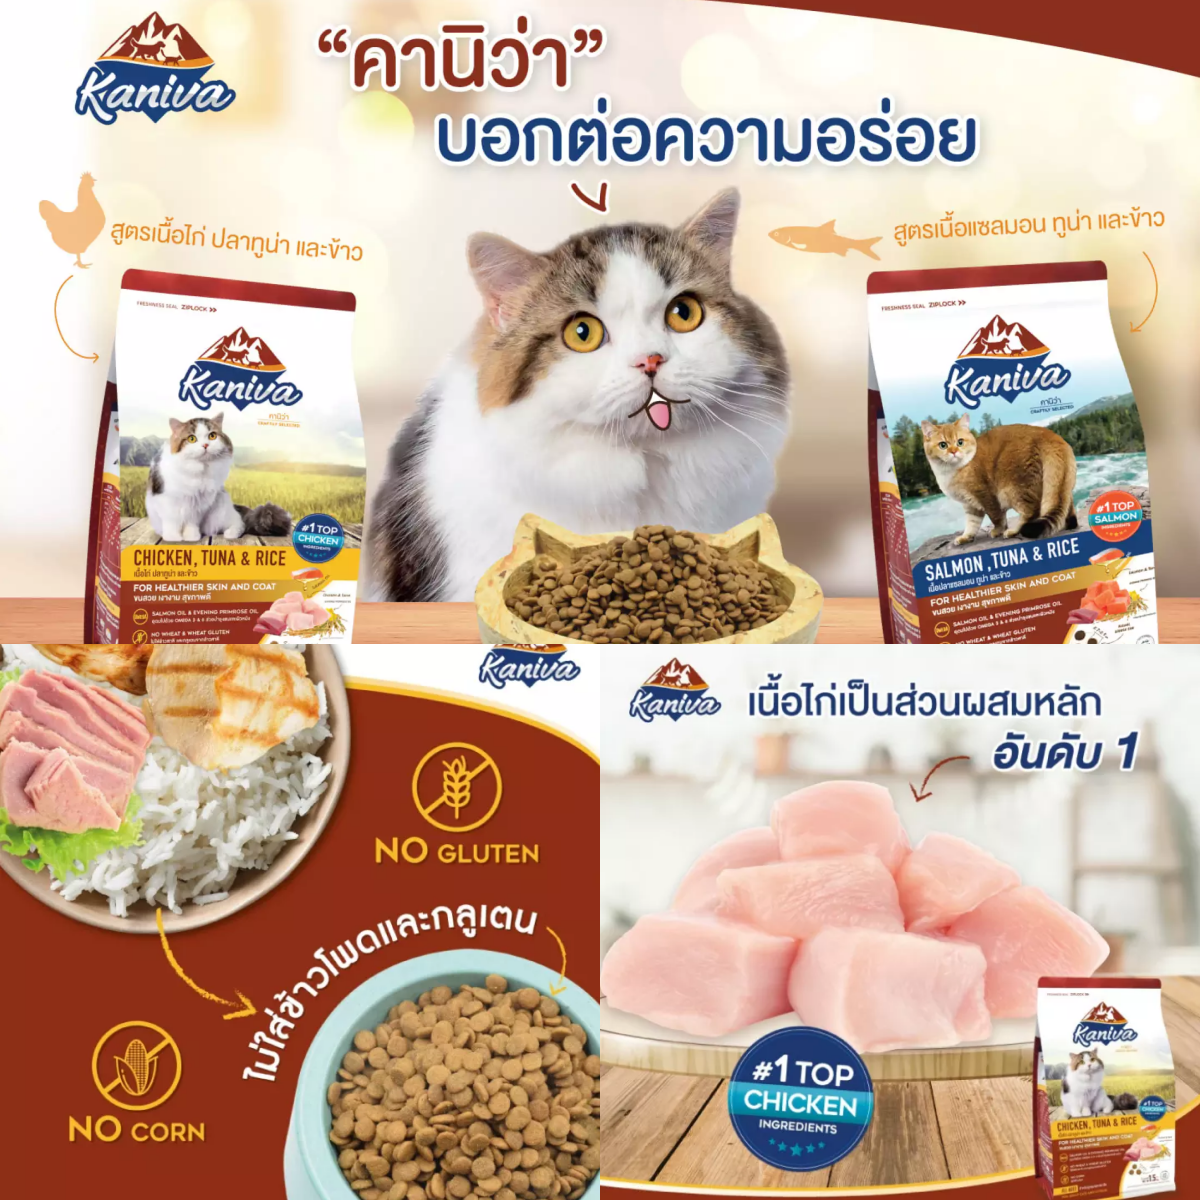 อาหารแมว คานิว่า, อาหารแมว, อาหารแมว ยี่ห้อไหนดี, อาหารแมวถูกและดี, อาหารแมวยี่ห้อไหนดี ขนไม่ร่วง, อาหารแมว สุขภาพดี